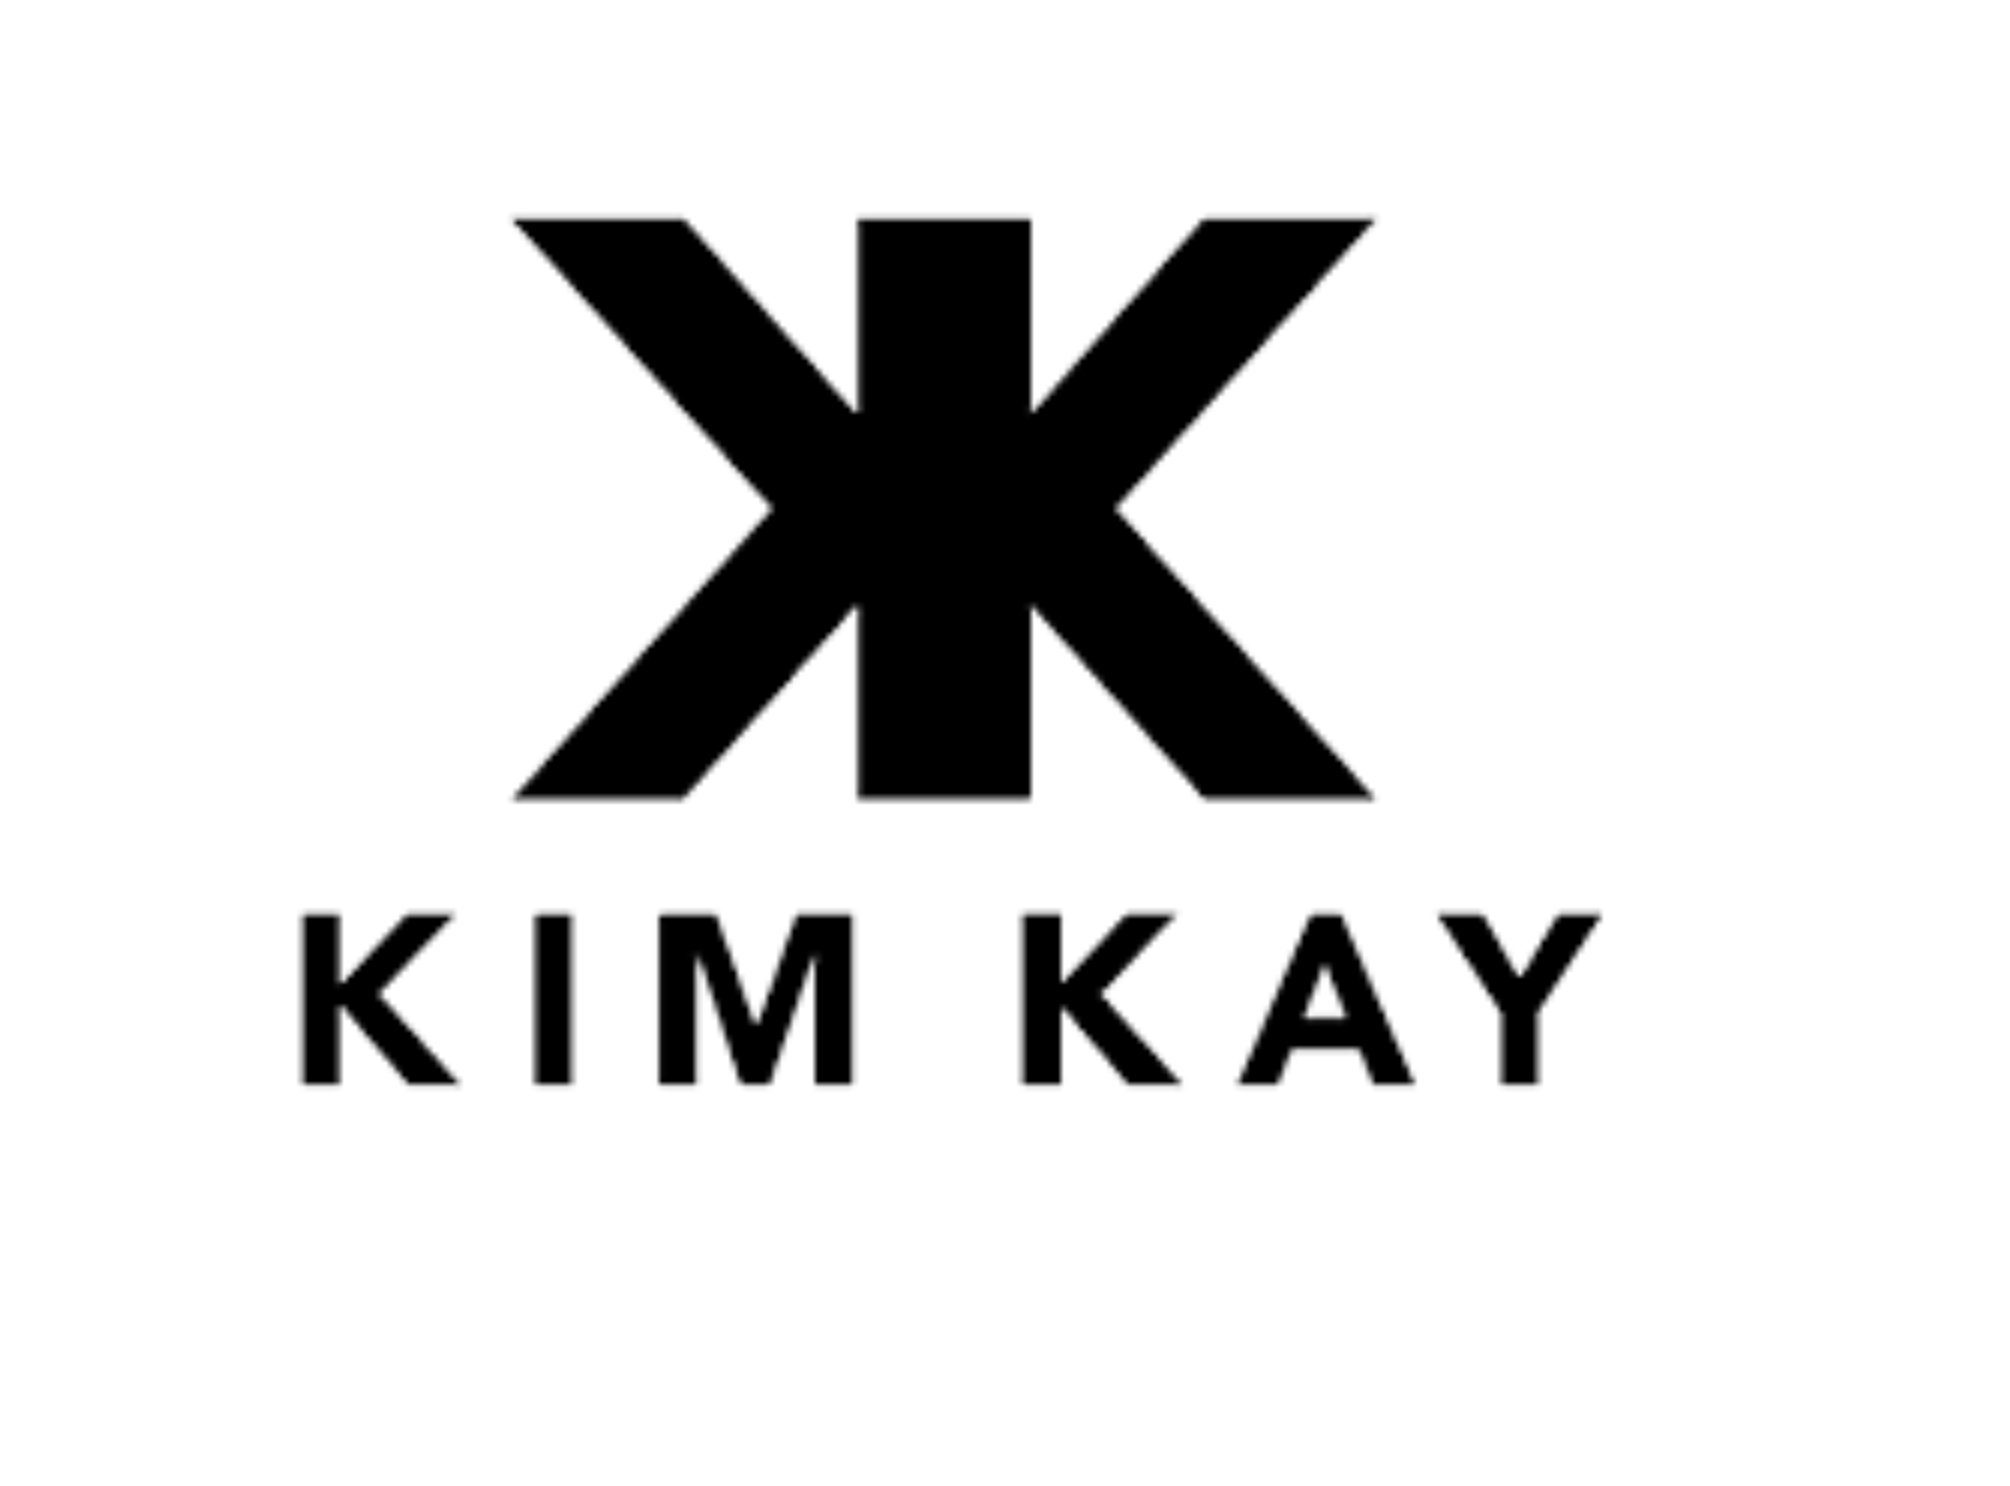 Kim Kay